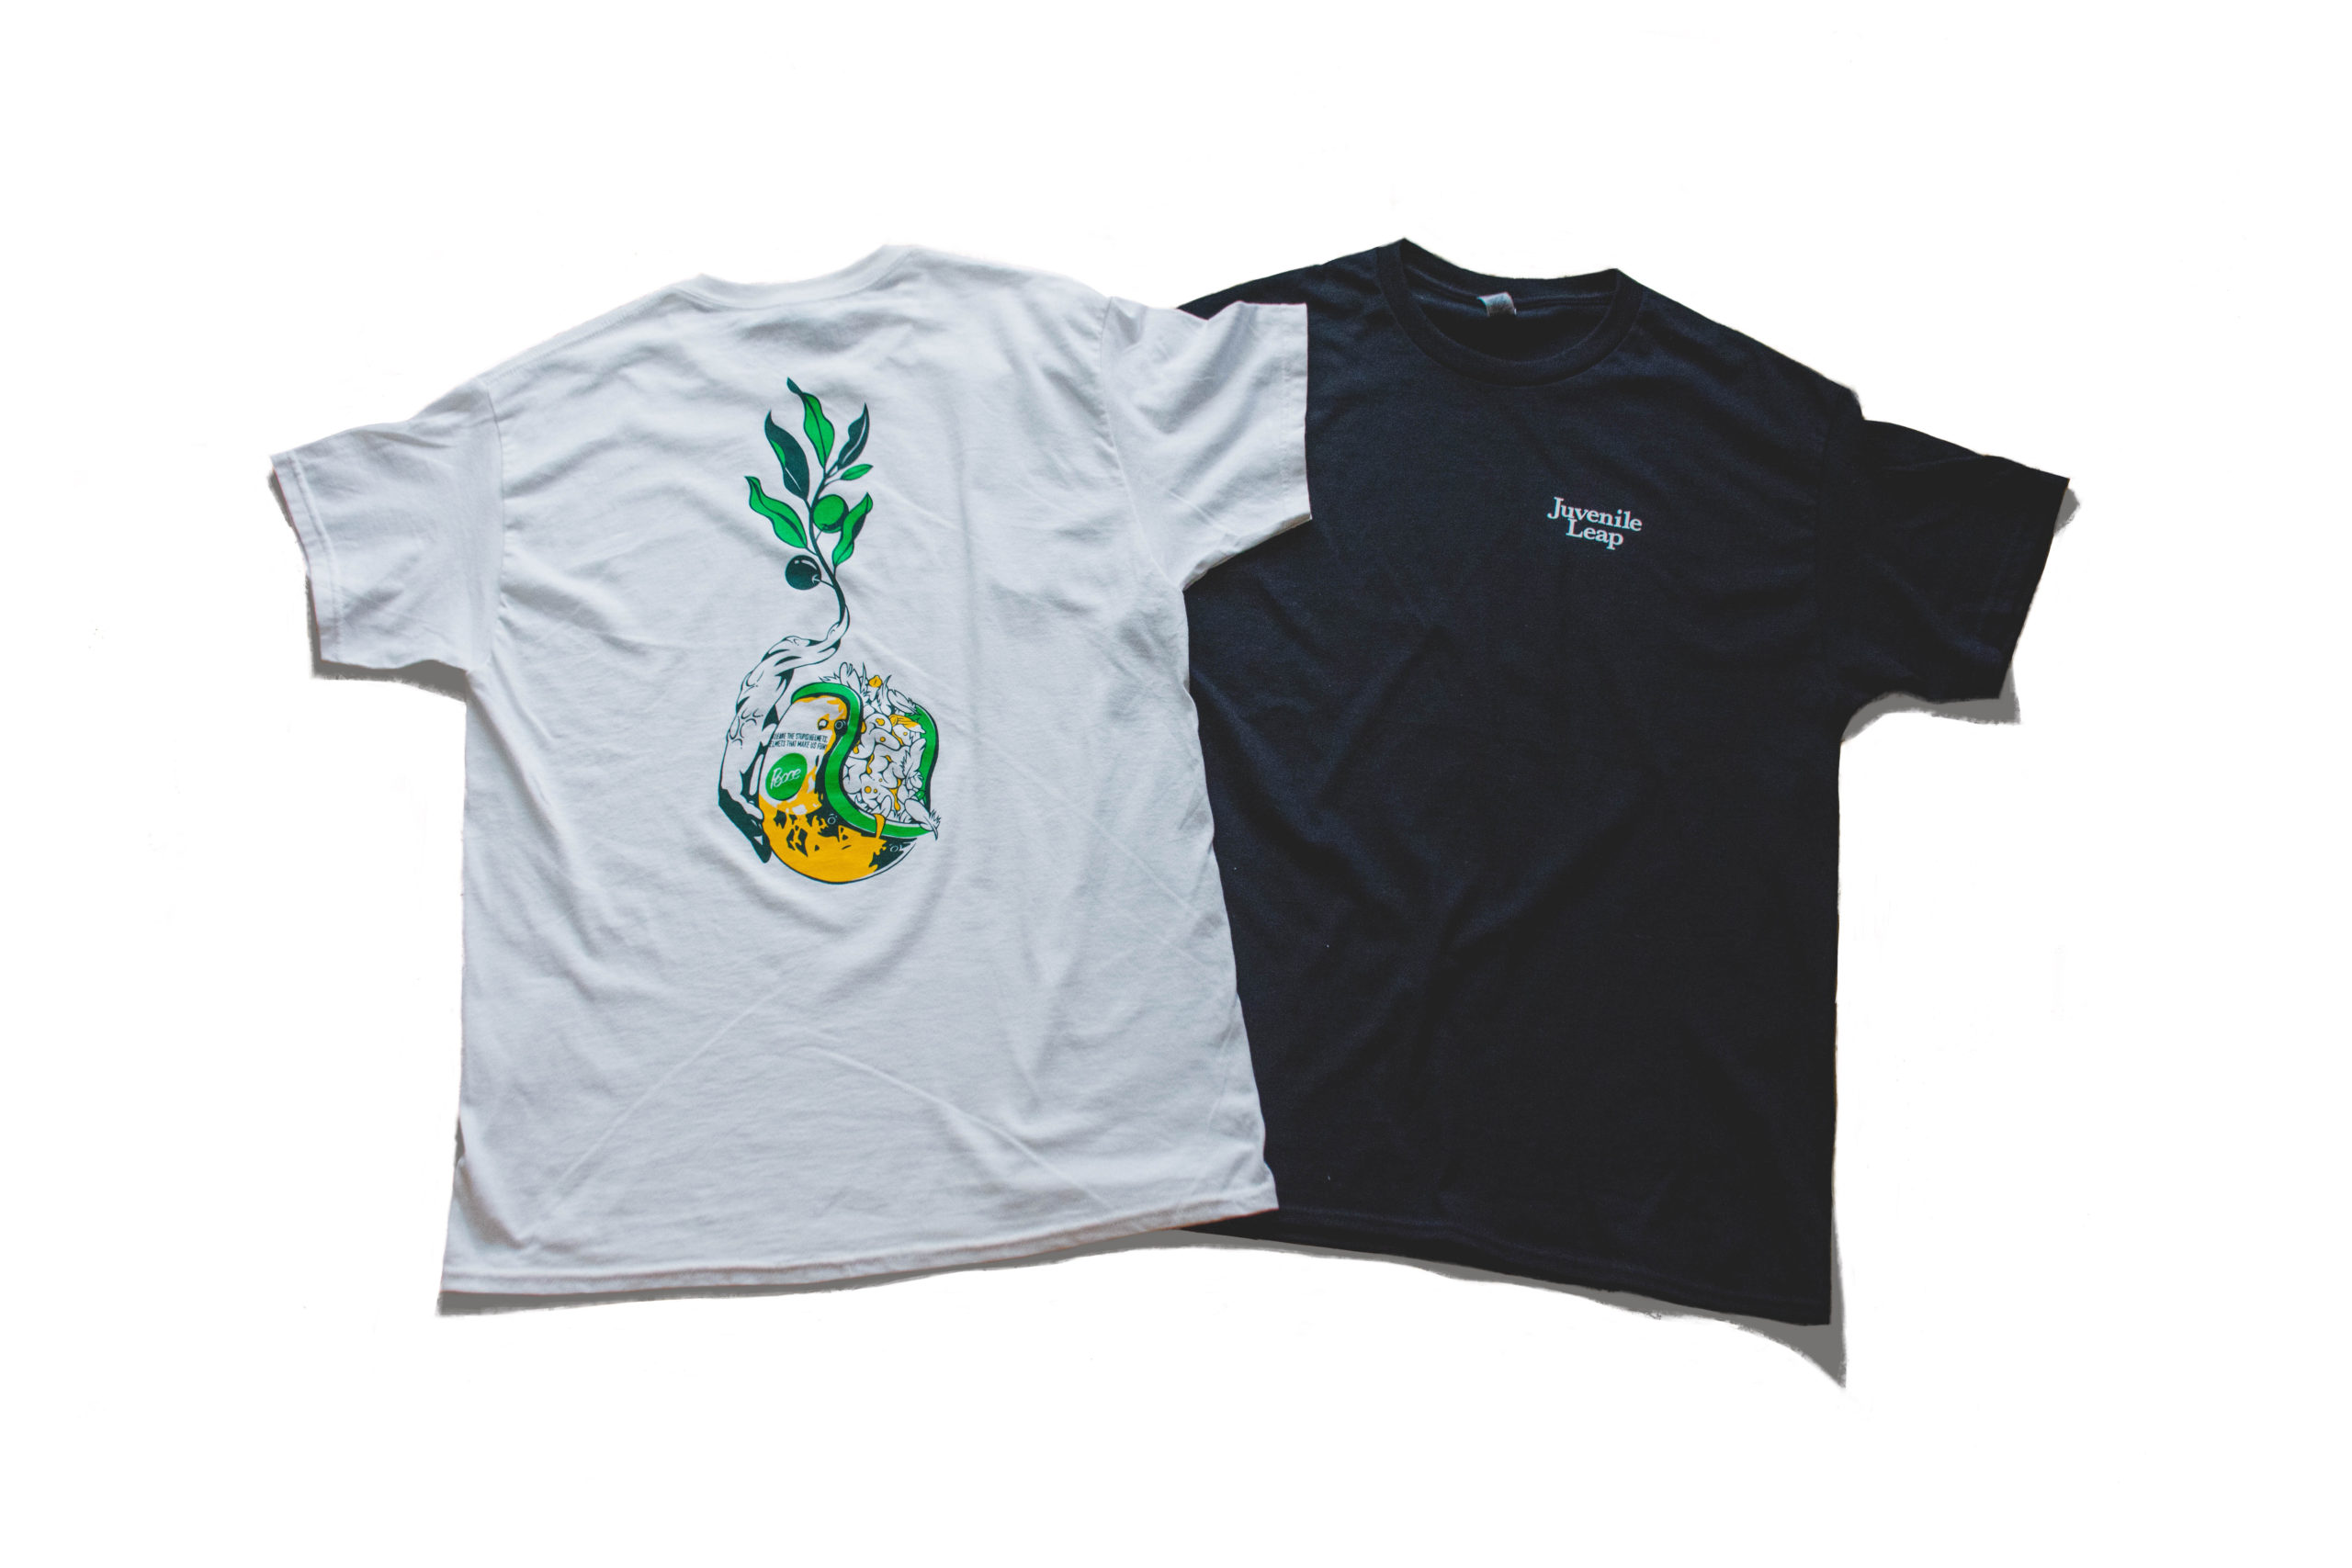 イラストレーターコサカダイキのオリジナルアパレルブランド Juvenileleap Tシャツ製作 コサカのアトリエ